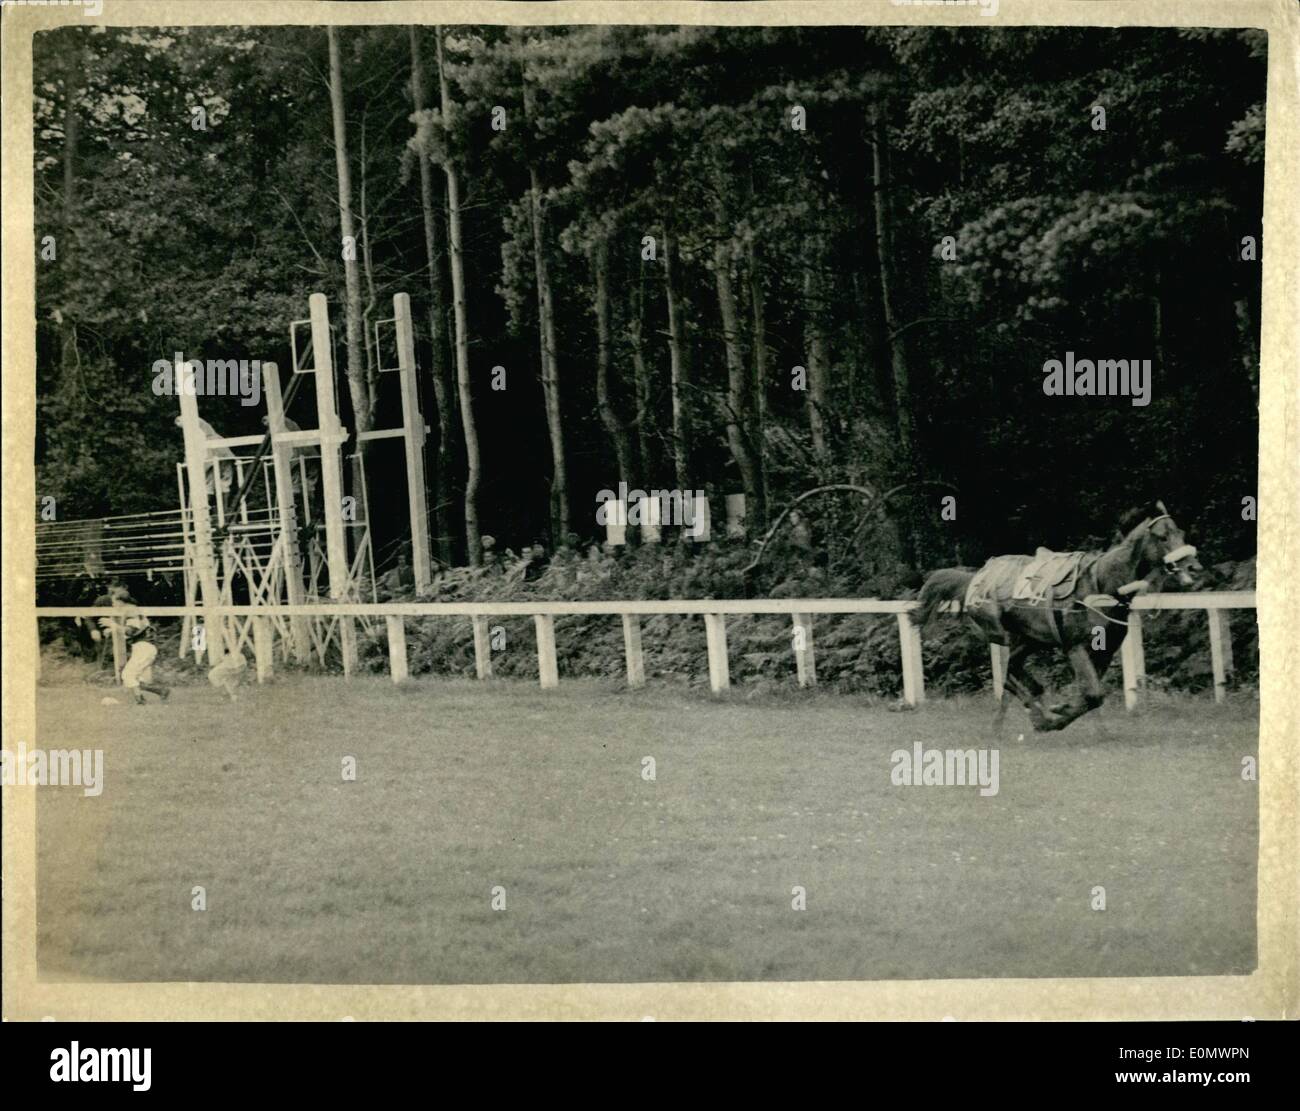 07 luglio 1956 - il Cavallo delle meraviglie italiano vince la più ricca gara della stagione britannica ad Ascot: Ribot, il ''cavallo da meraviglia'' italiano, il cui valore vendibile non è molto breve di 300,000, ha vinto il re Giorgio VI e la regina Elisabetta, la gara più ricca della stagione, con un premio di 26,150, oggi ad Ascot. Foto mostra: Todrai, il cavallo belga che si imbullonava lungo il corso dopo aver gettato il suo fantino Vandendriessche prima dell'inizio della gara. Fu finalmente catturato e finito terzo dopo che finalmente fu catturato e finito terzo dopo che aveva già corso il corso. Foto Stock